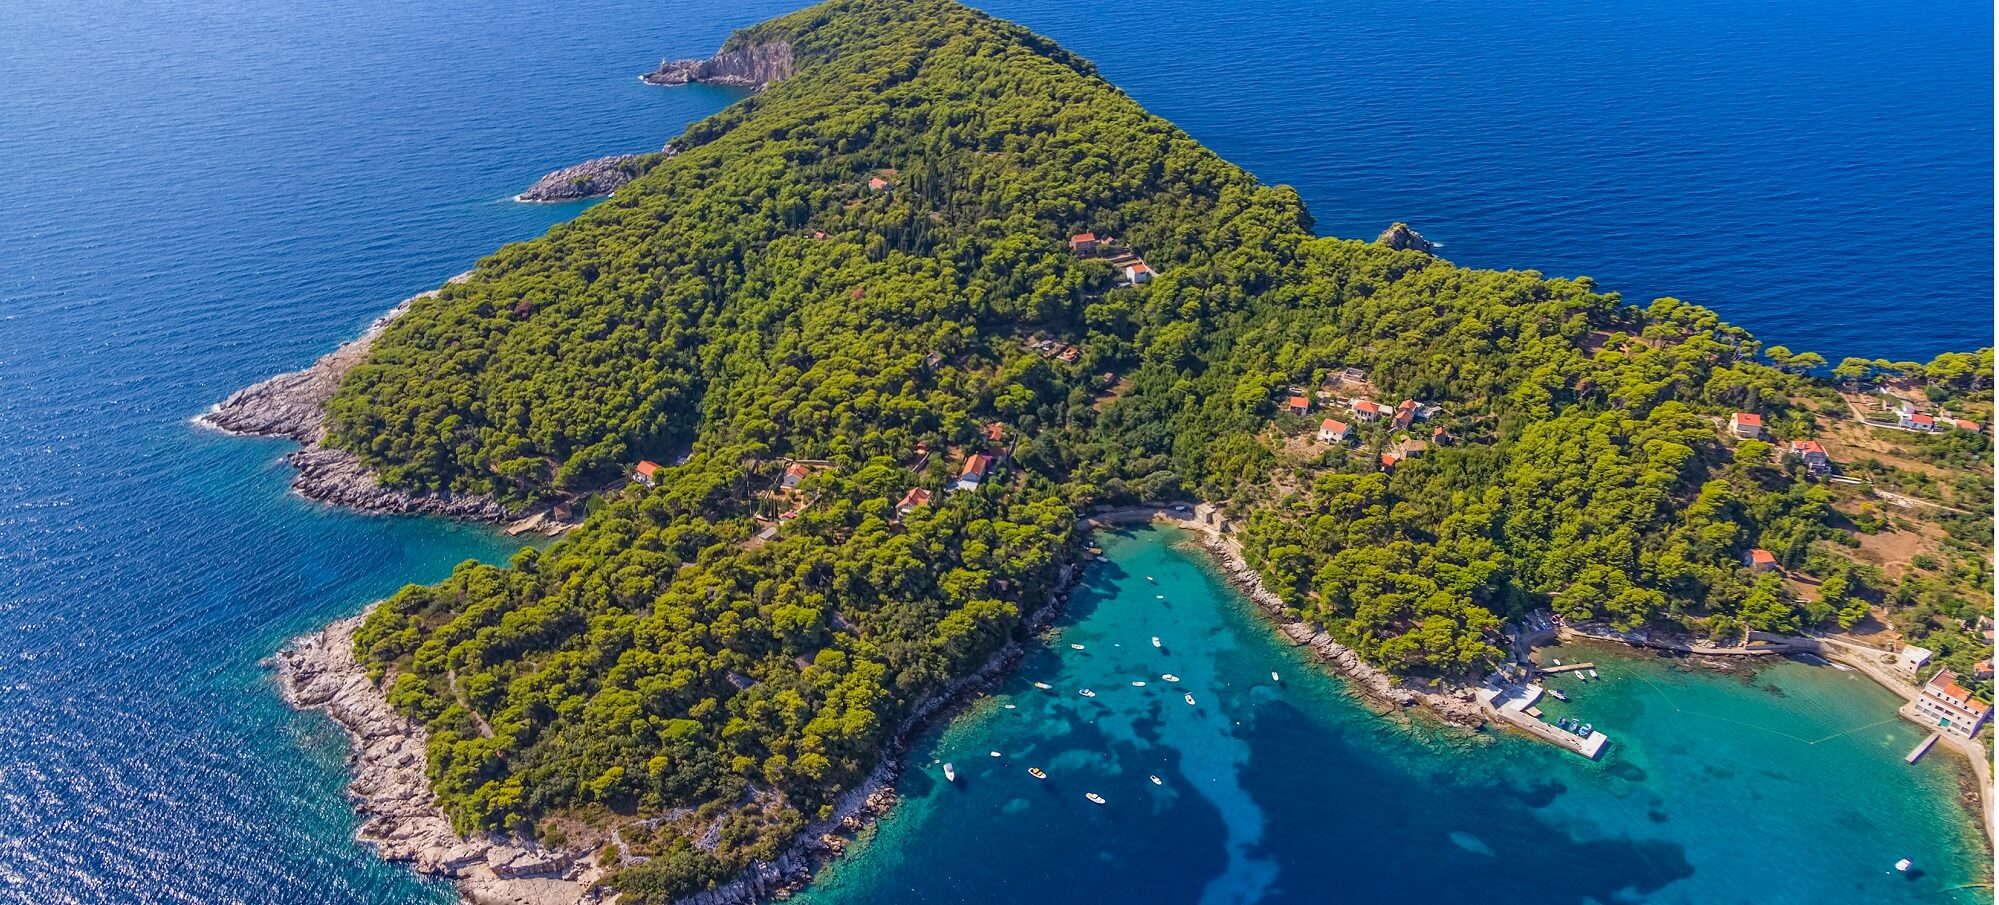 Elafitski otoci: Očaravajući arhipelag sjeverno od Dubrovnika